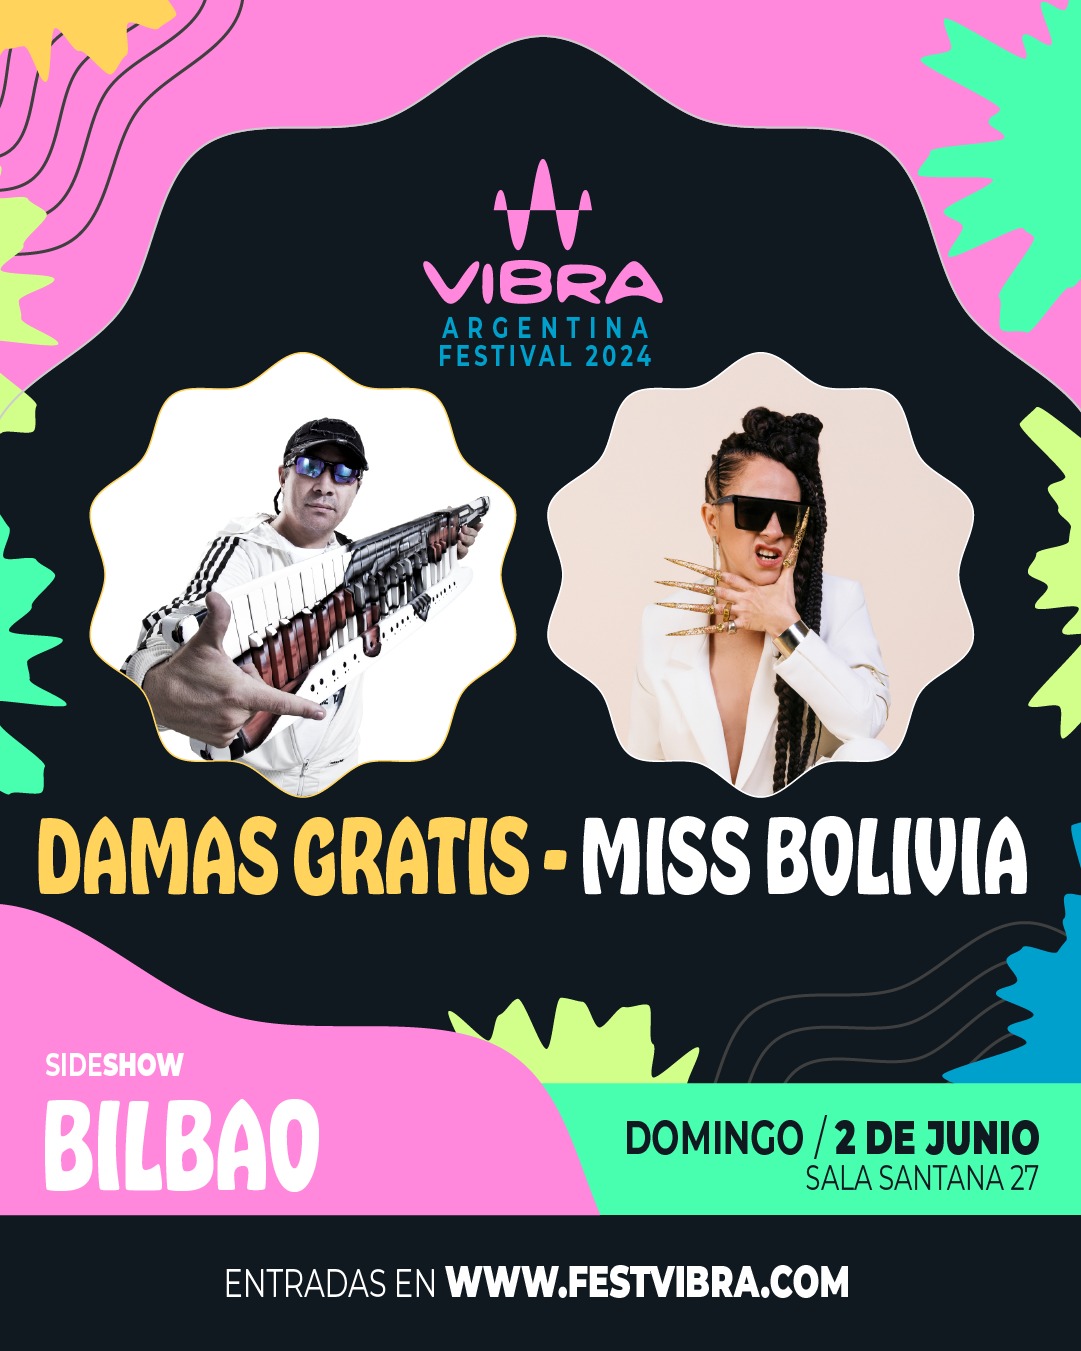 VIBRA ARGENTINA FESTIVAL 2024 en BILBAO, sala Santana 27, Domingo 2 Junio Damas Gratis y Miss Bolivia, Las Pelotas y Virus. Entradas y Info: www.festvibra.com